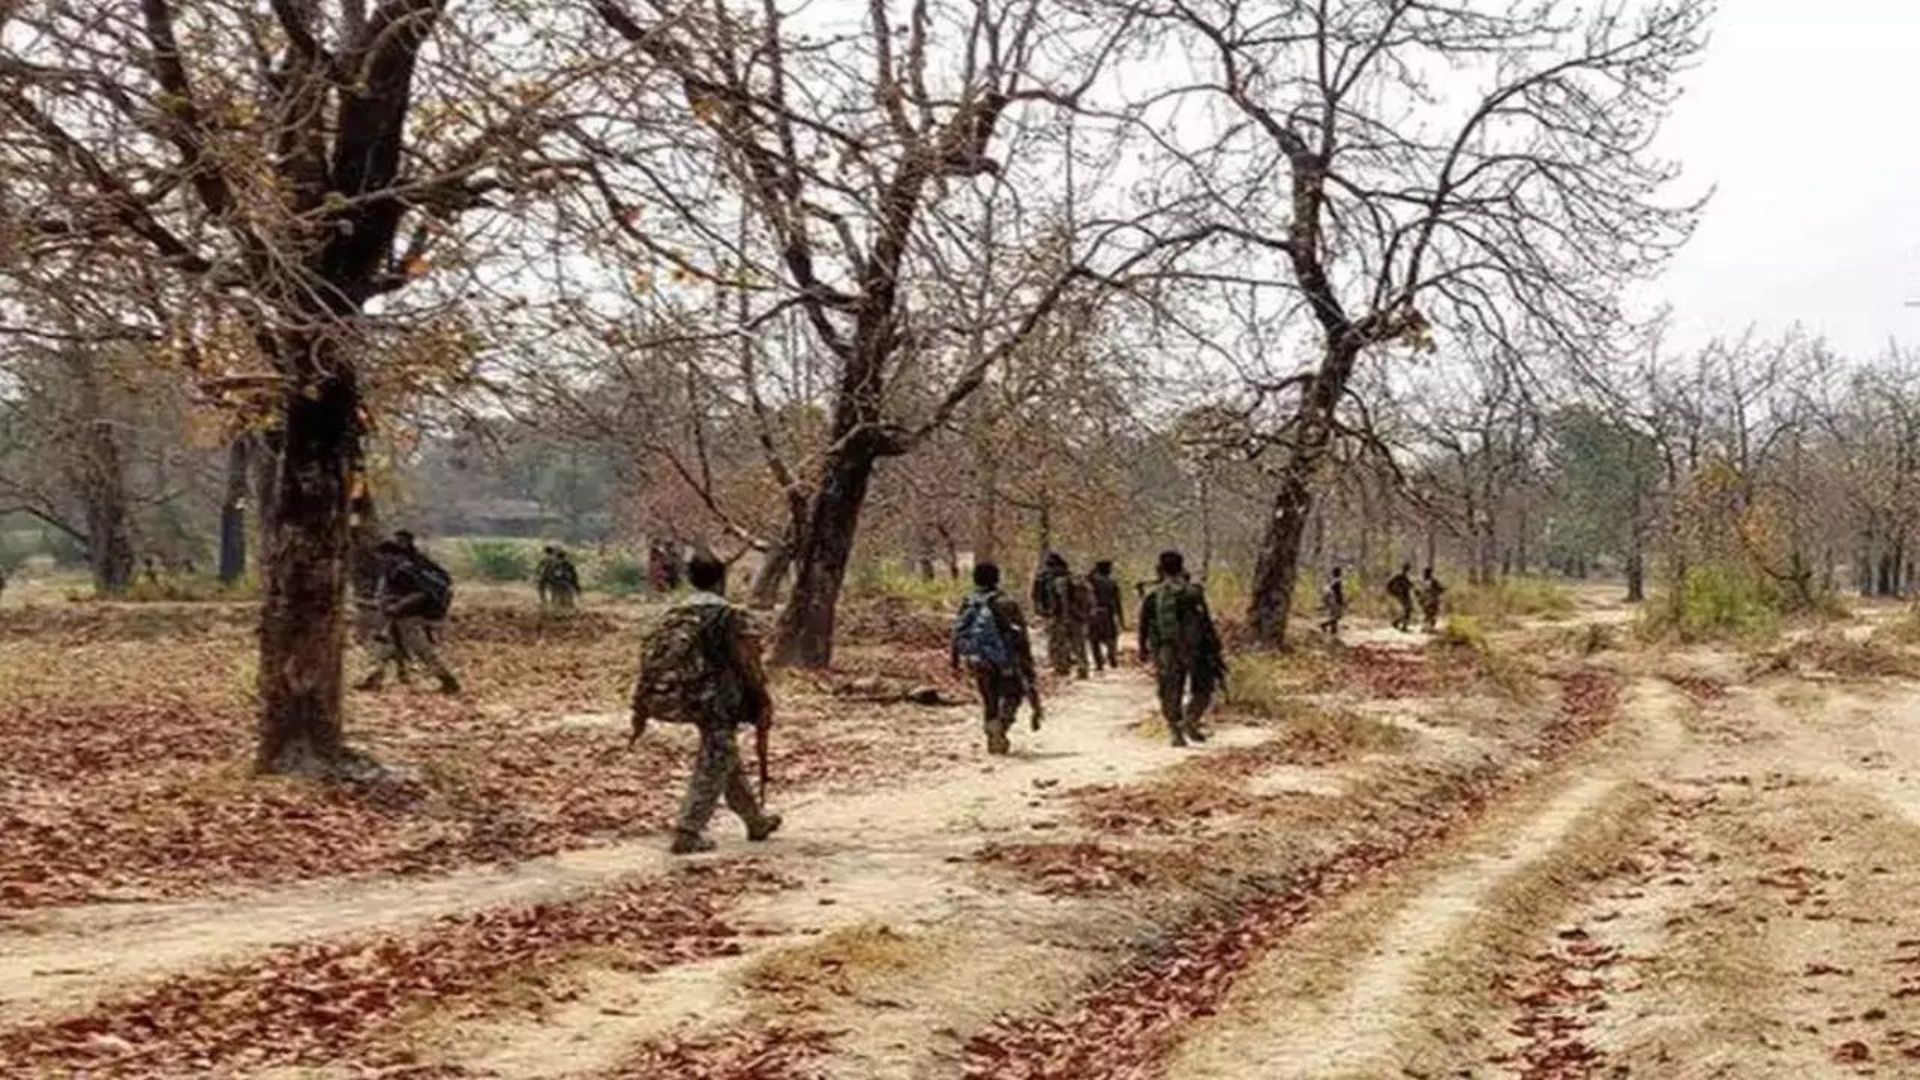 Bijapur Encounter: 10 Naxals Killed, Including Female Member, Confirms Bastar IG